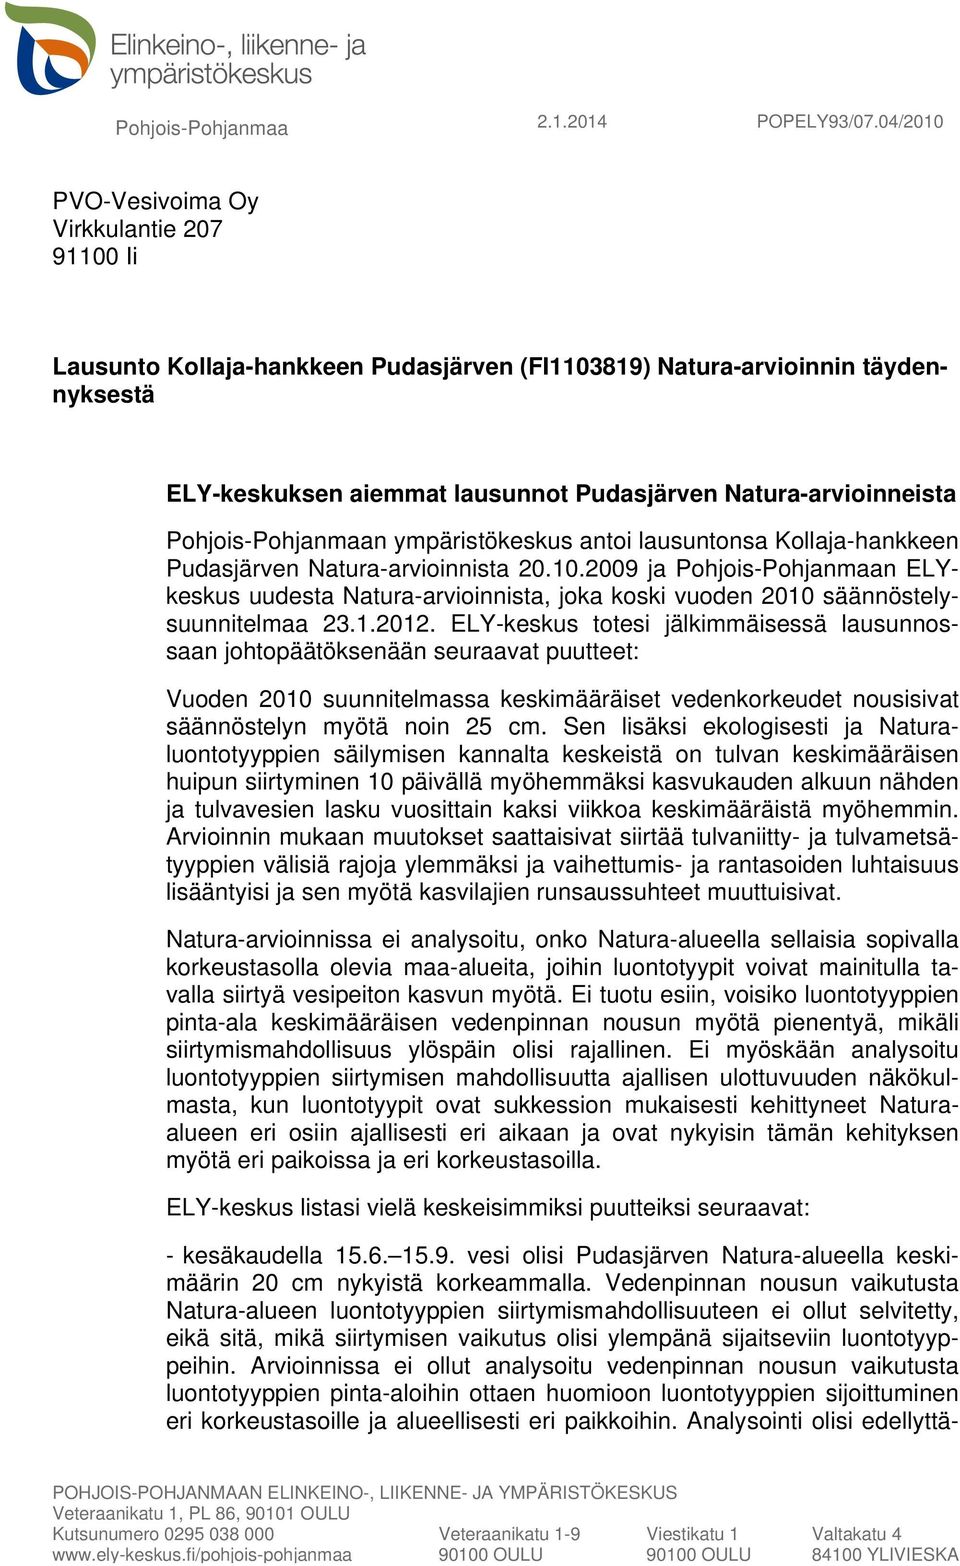 Pohjois-Pohjanmaan ympäristökeskus antoi lausuntonsa Kollaja-hankkeen Pudasjärven Natura-arvioinnista 20.10.